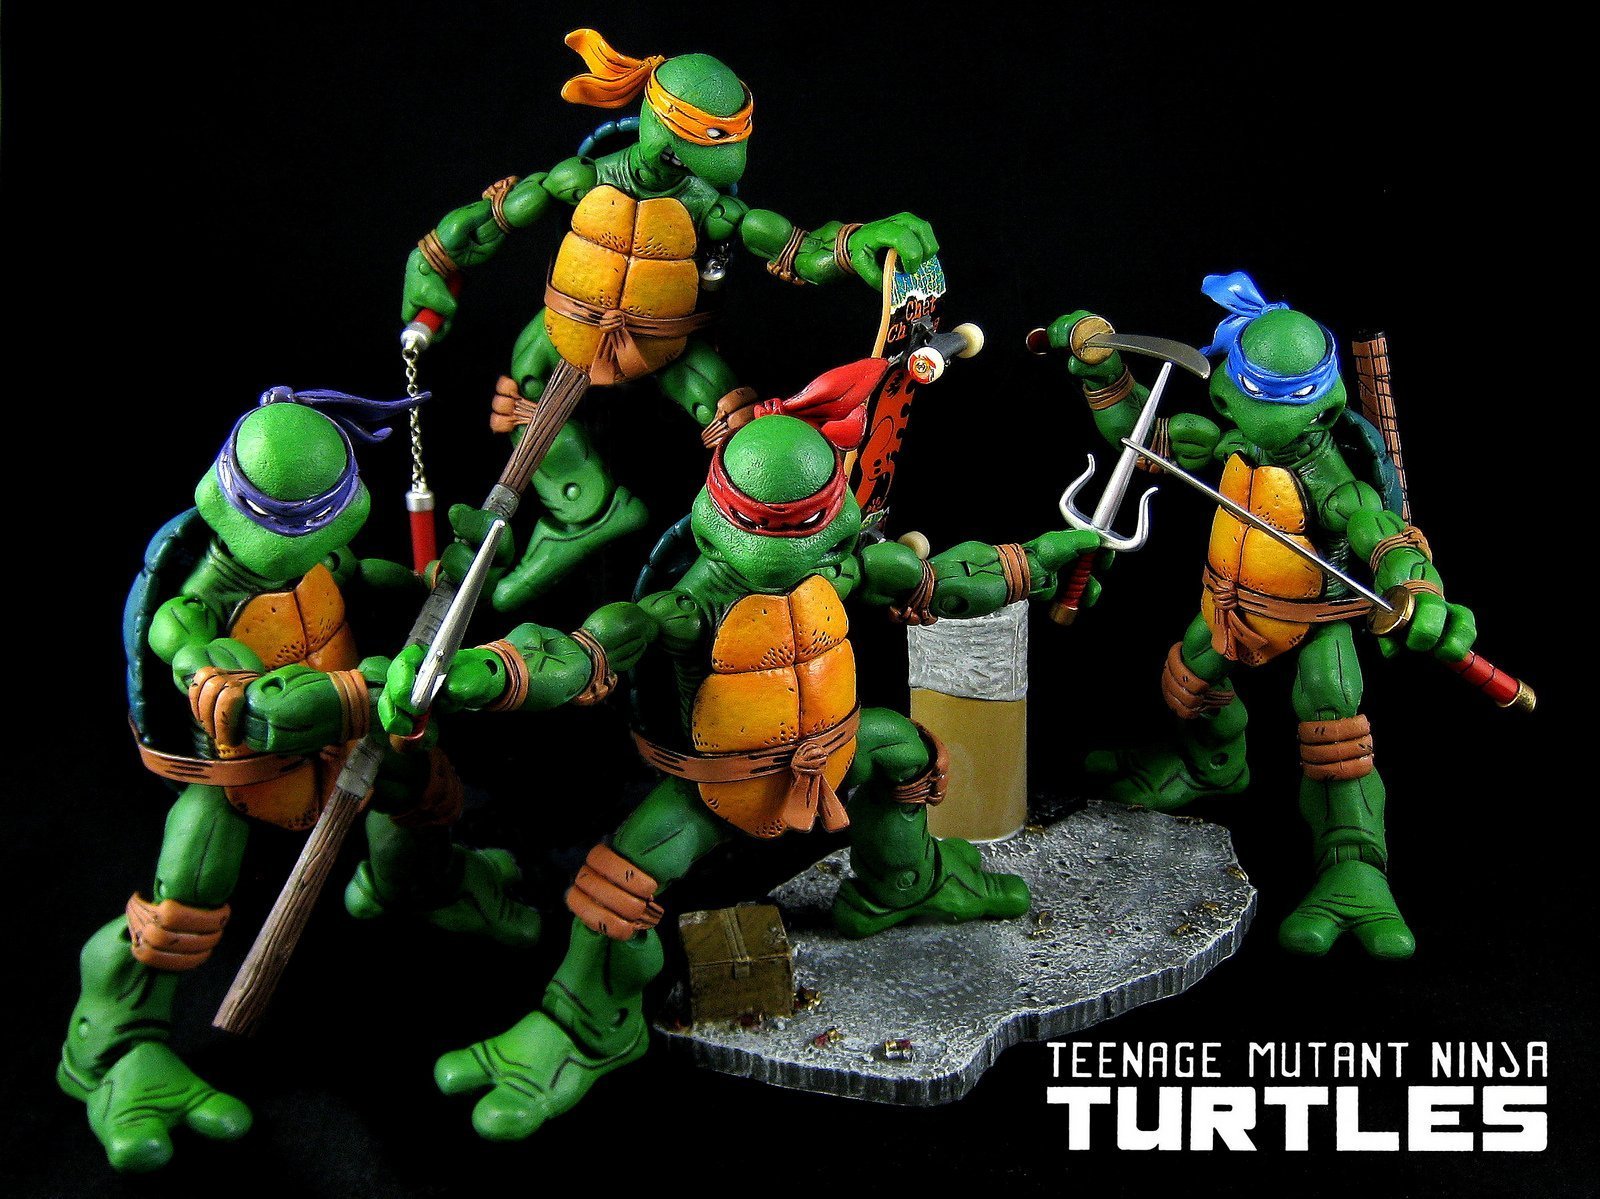 Teenage Mutant Ninja Turtles | Photo: Flickr